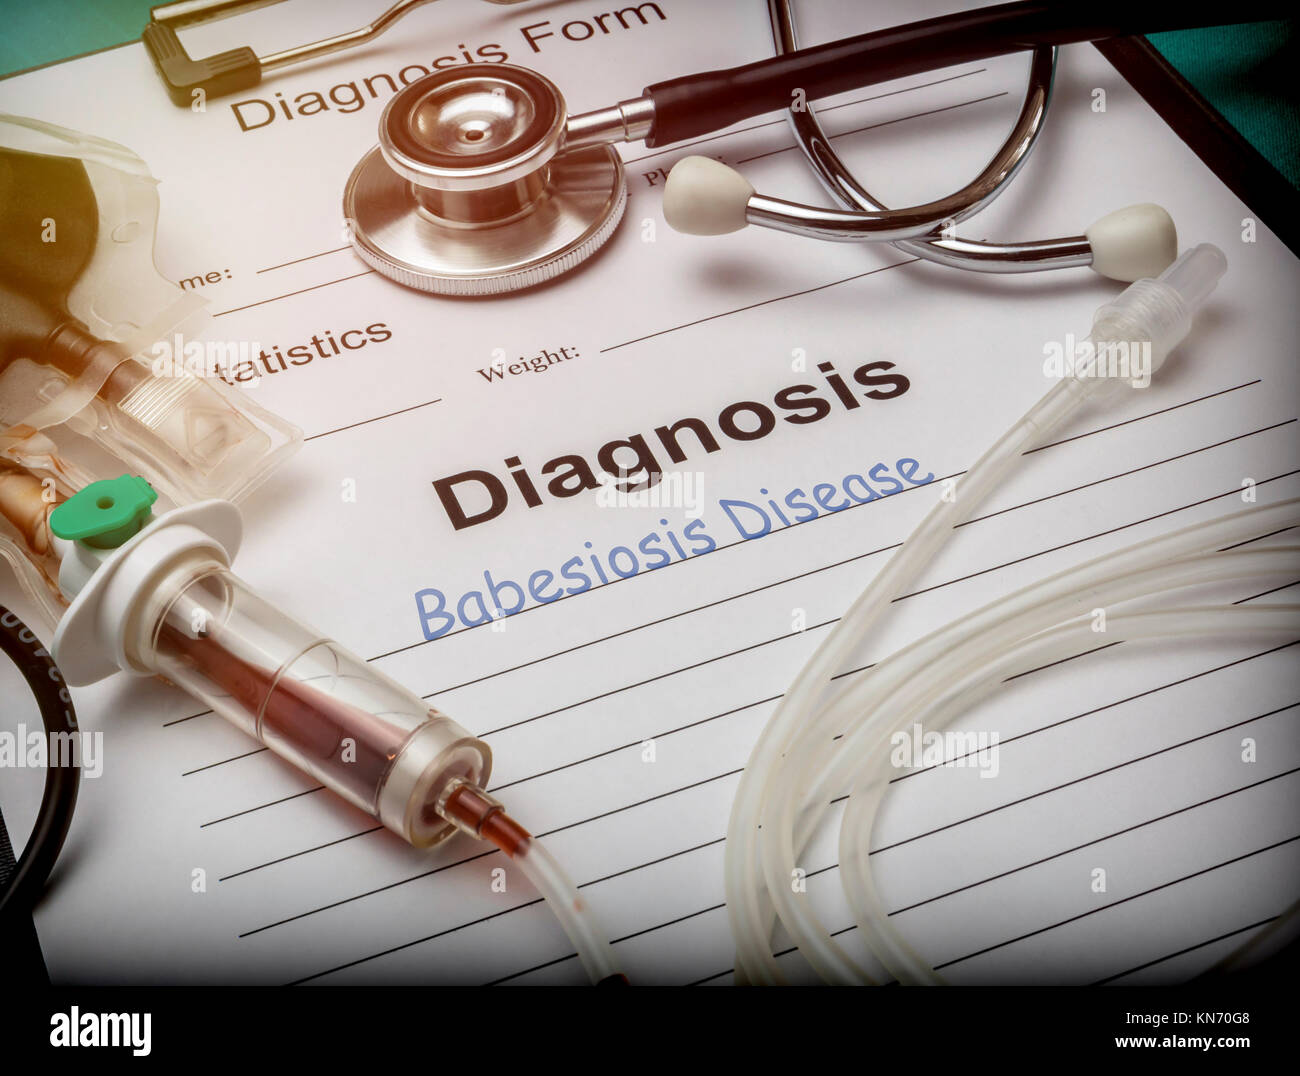 Formulario de diagnóstico, babesiosis enfermedad, equipos de riego por goteo con rastros de sangre en un hospital, imagen conceptual Foto de stock